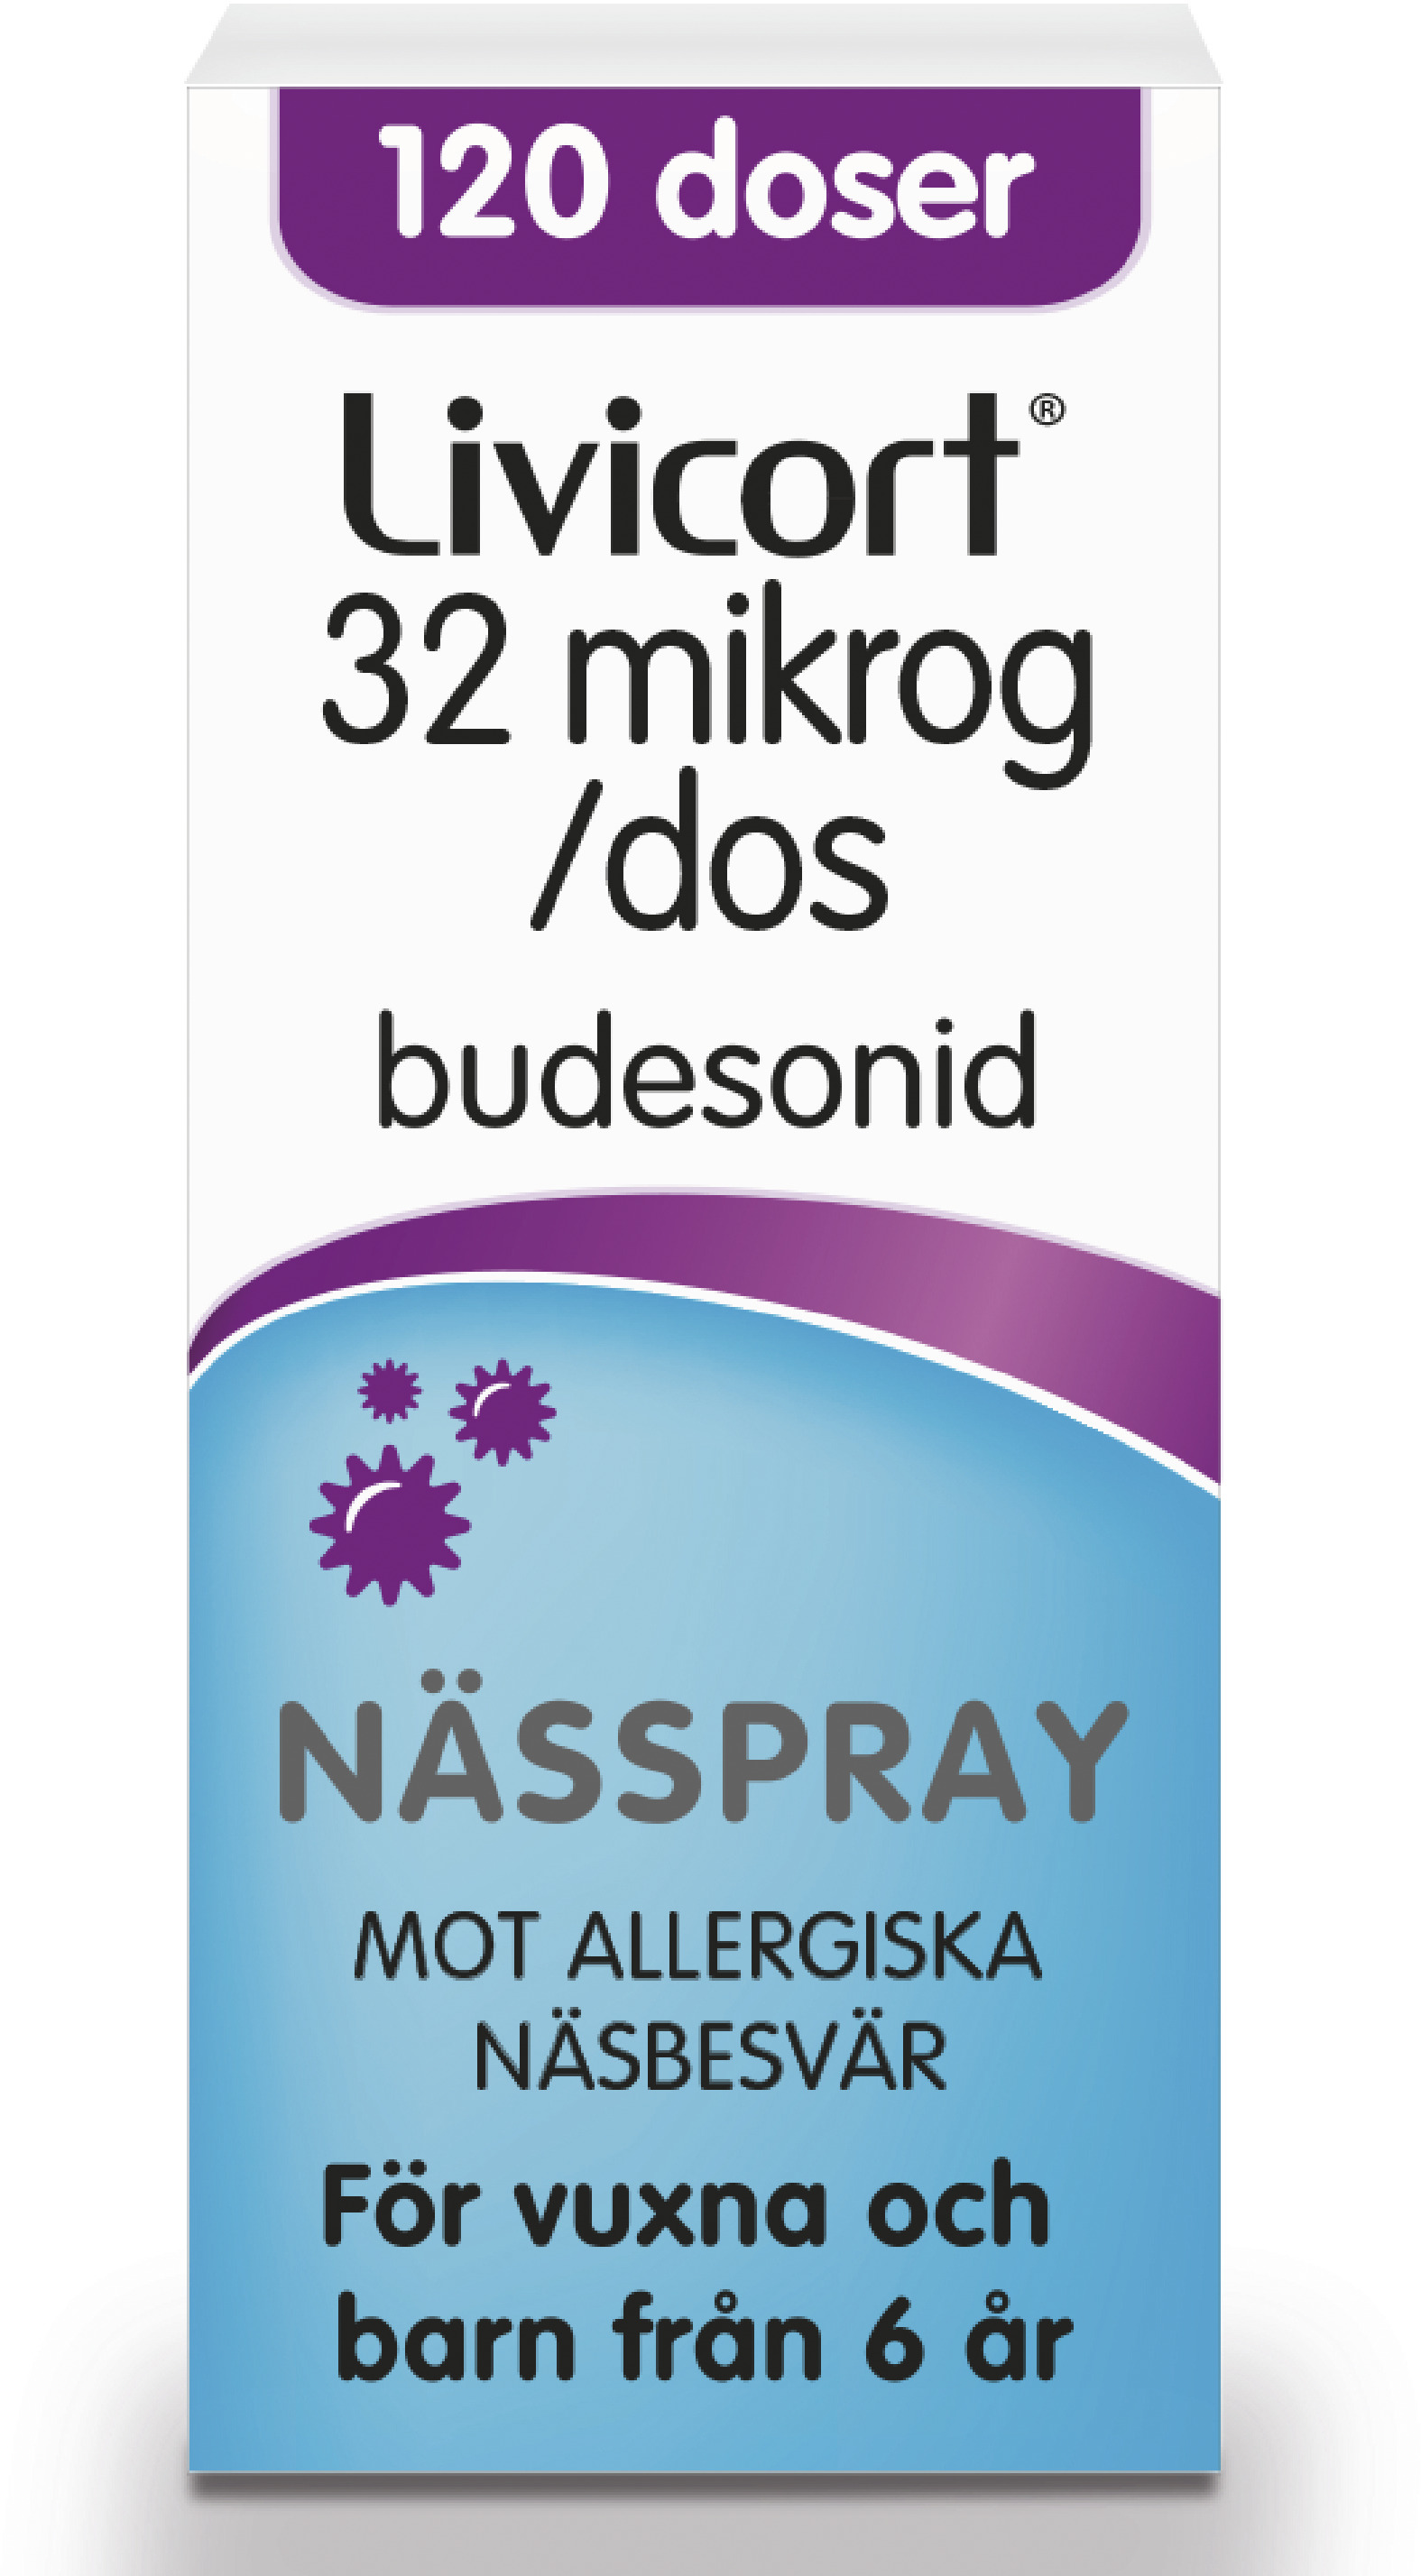 Livicort Nässpray 32 µg/dos 120 doser